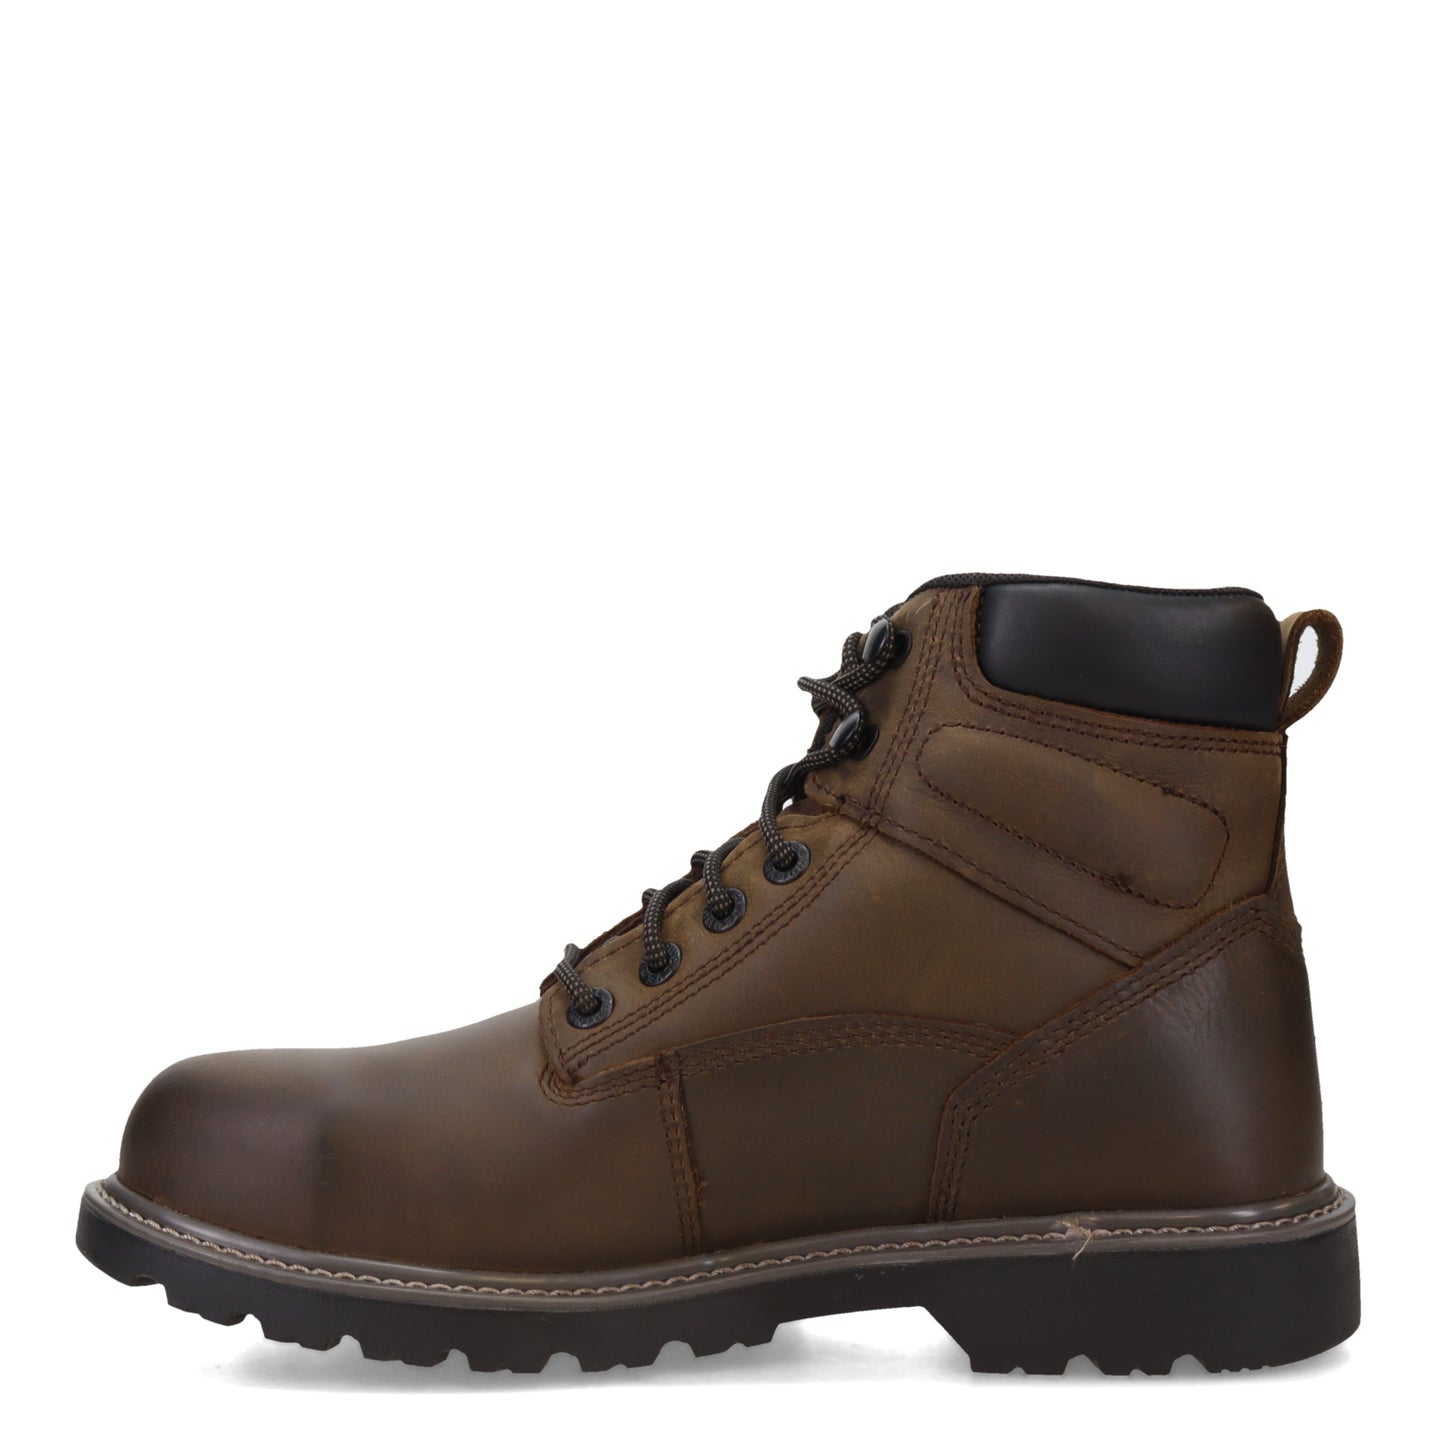 Men's Wolverine Boots, Floorhand 6 inch Waterproof Steel Toe Work Boot ...